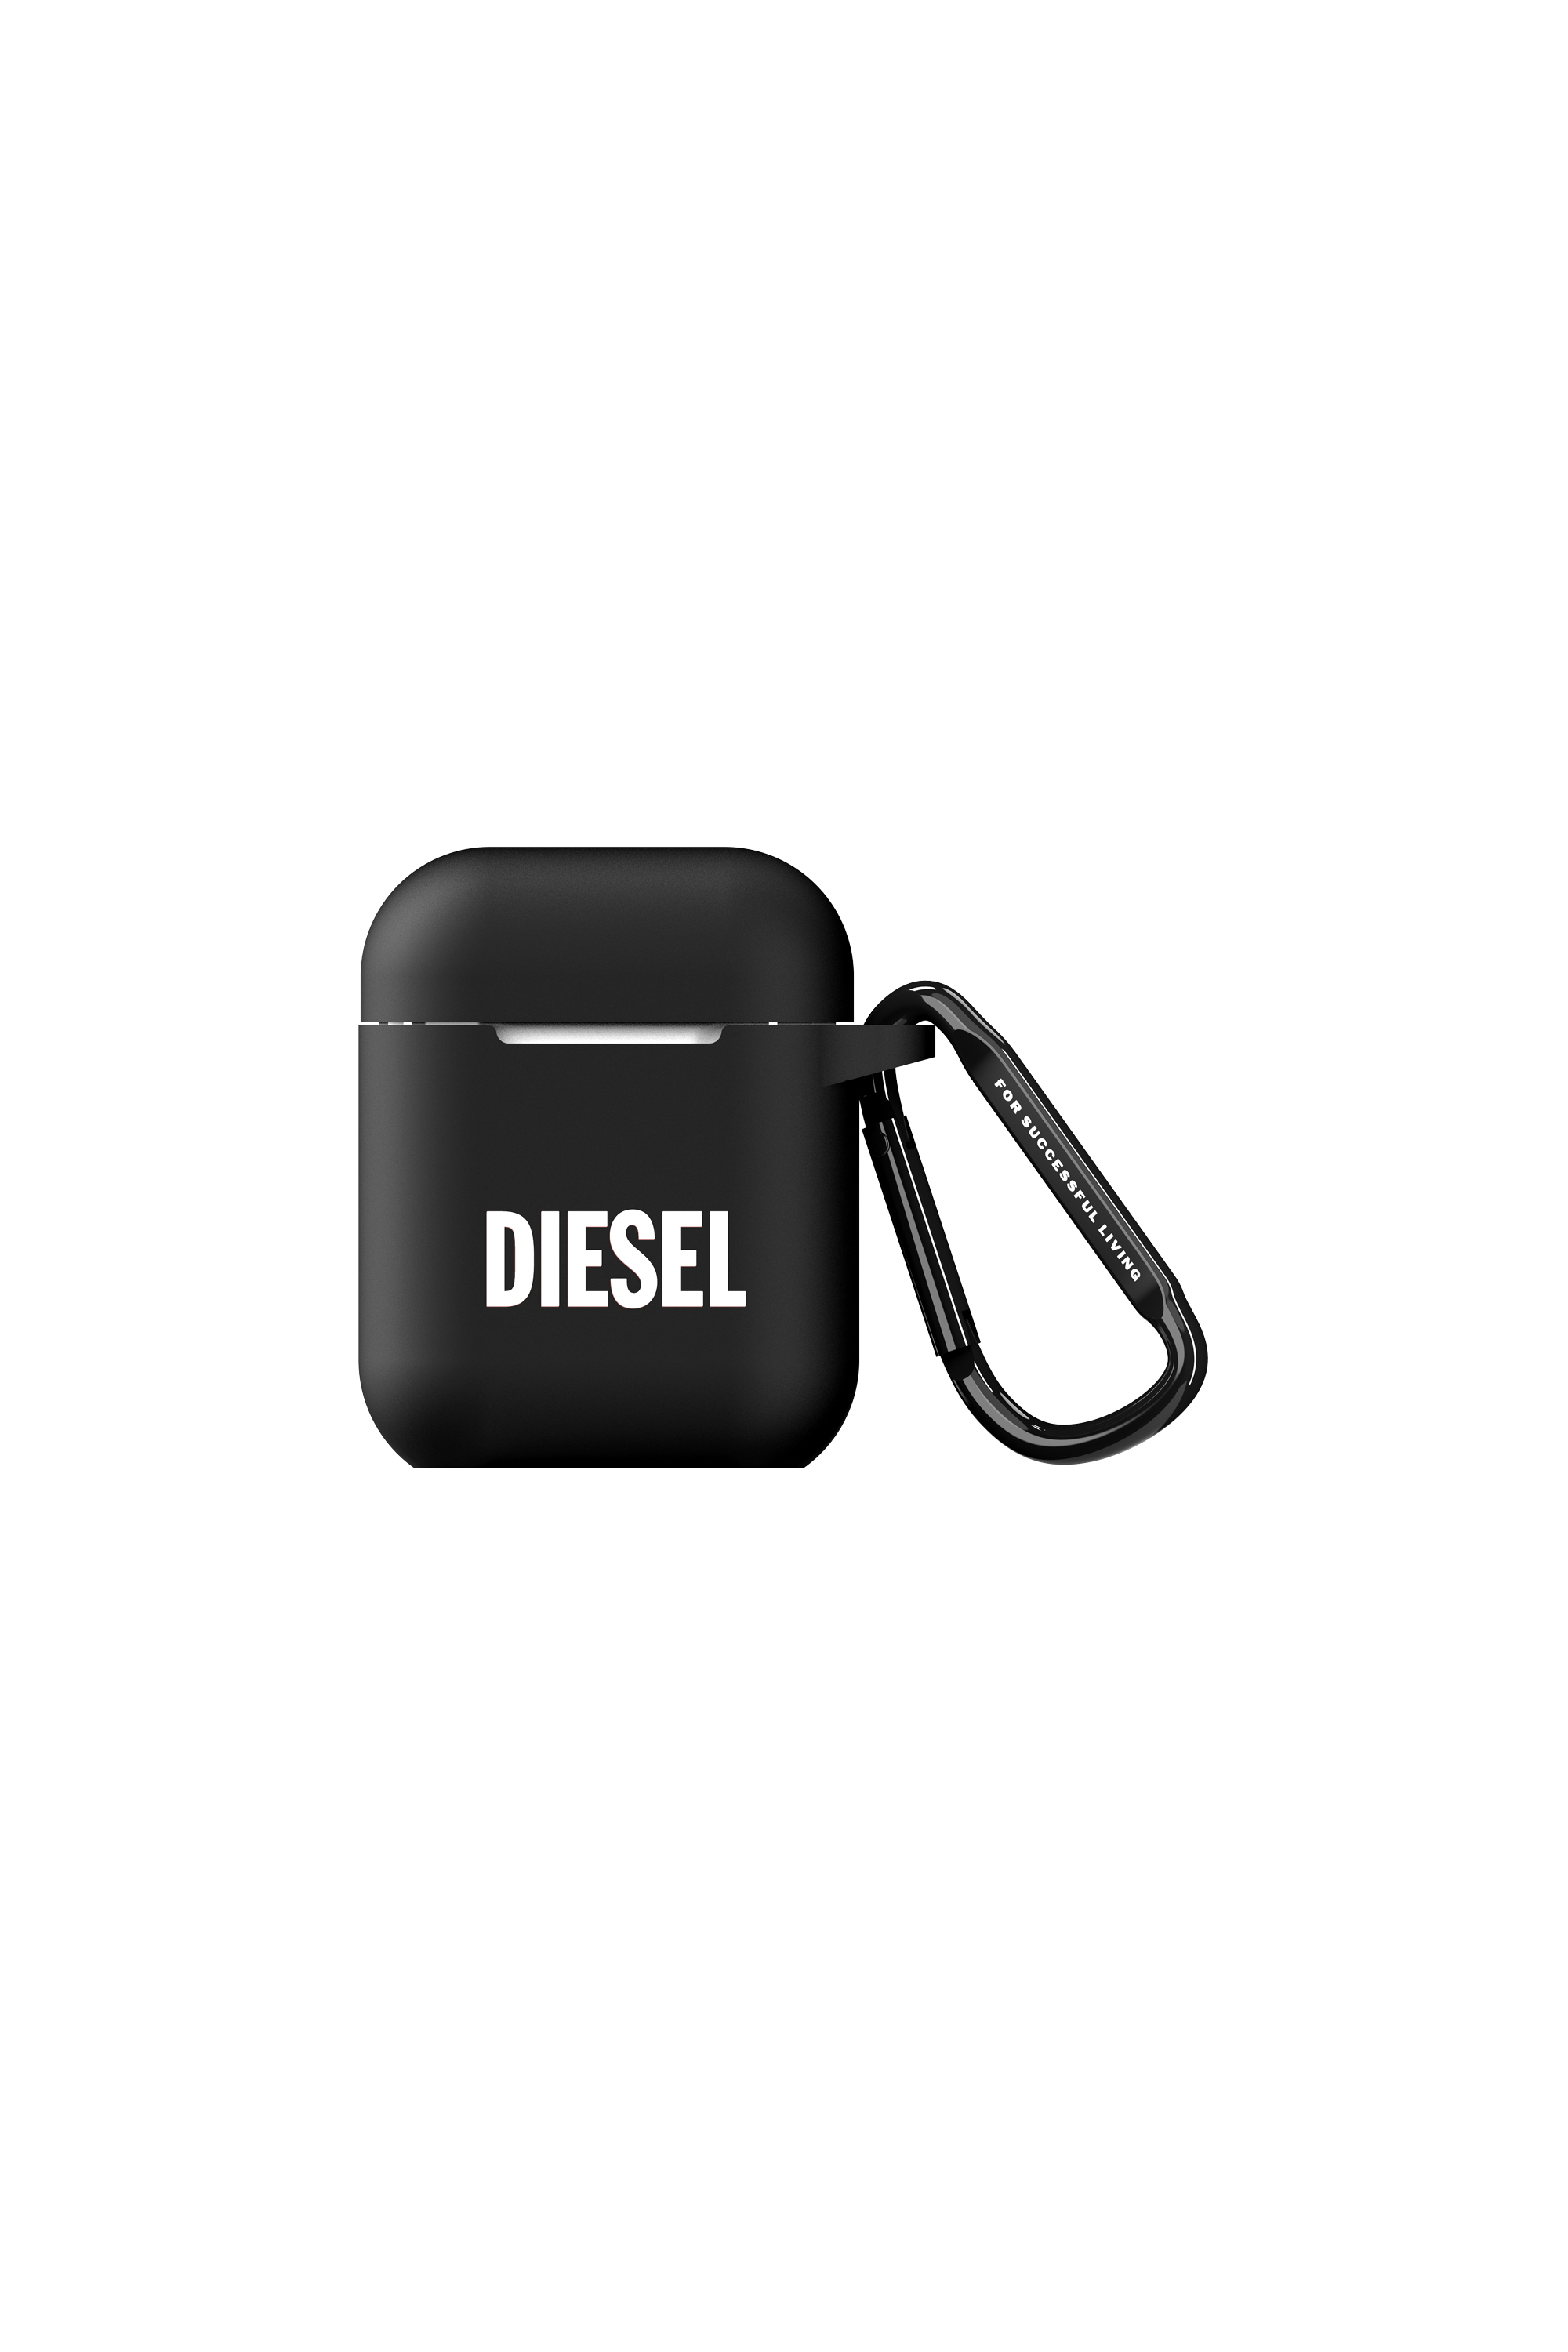 Diesel - 45830 AIRPOD CASE, Black - Image 1